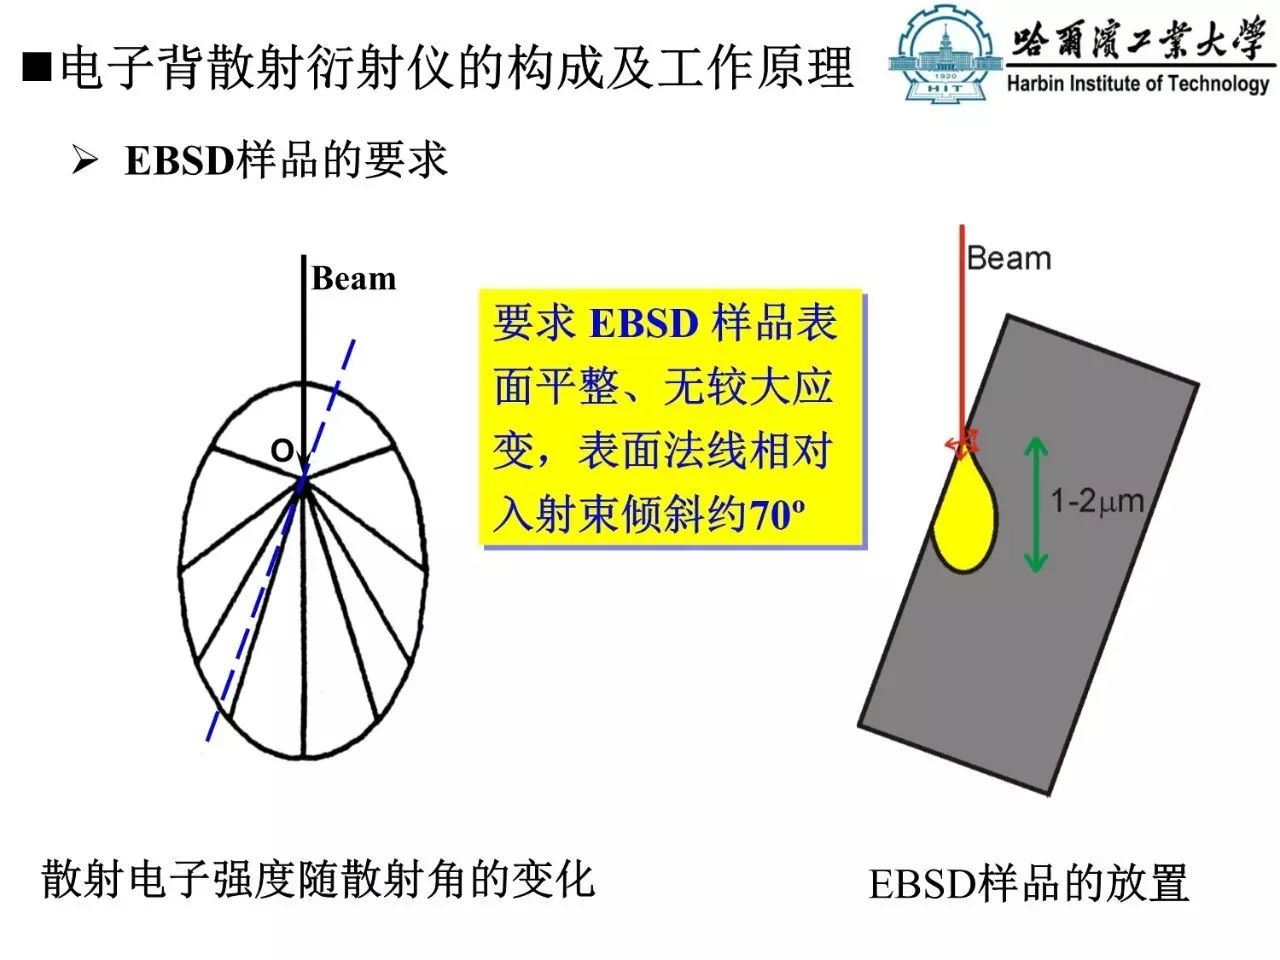 90张图带你了解电子背散射衍射技术（EBSD）原理与应用